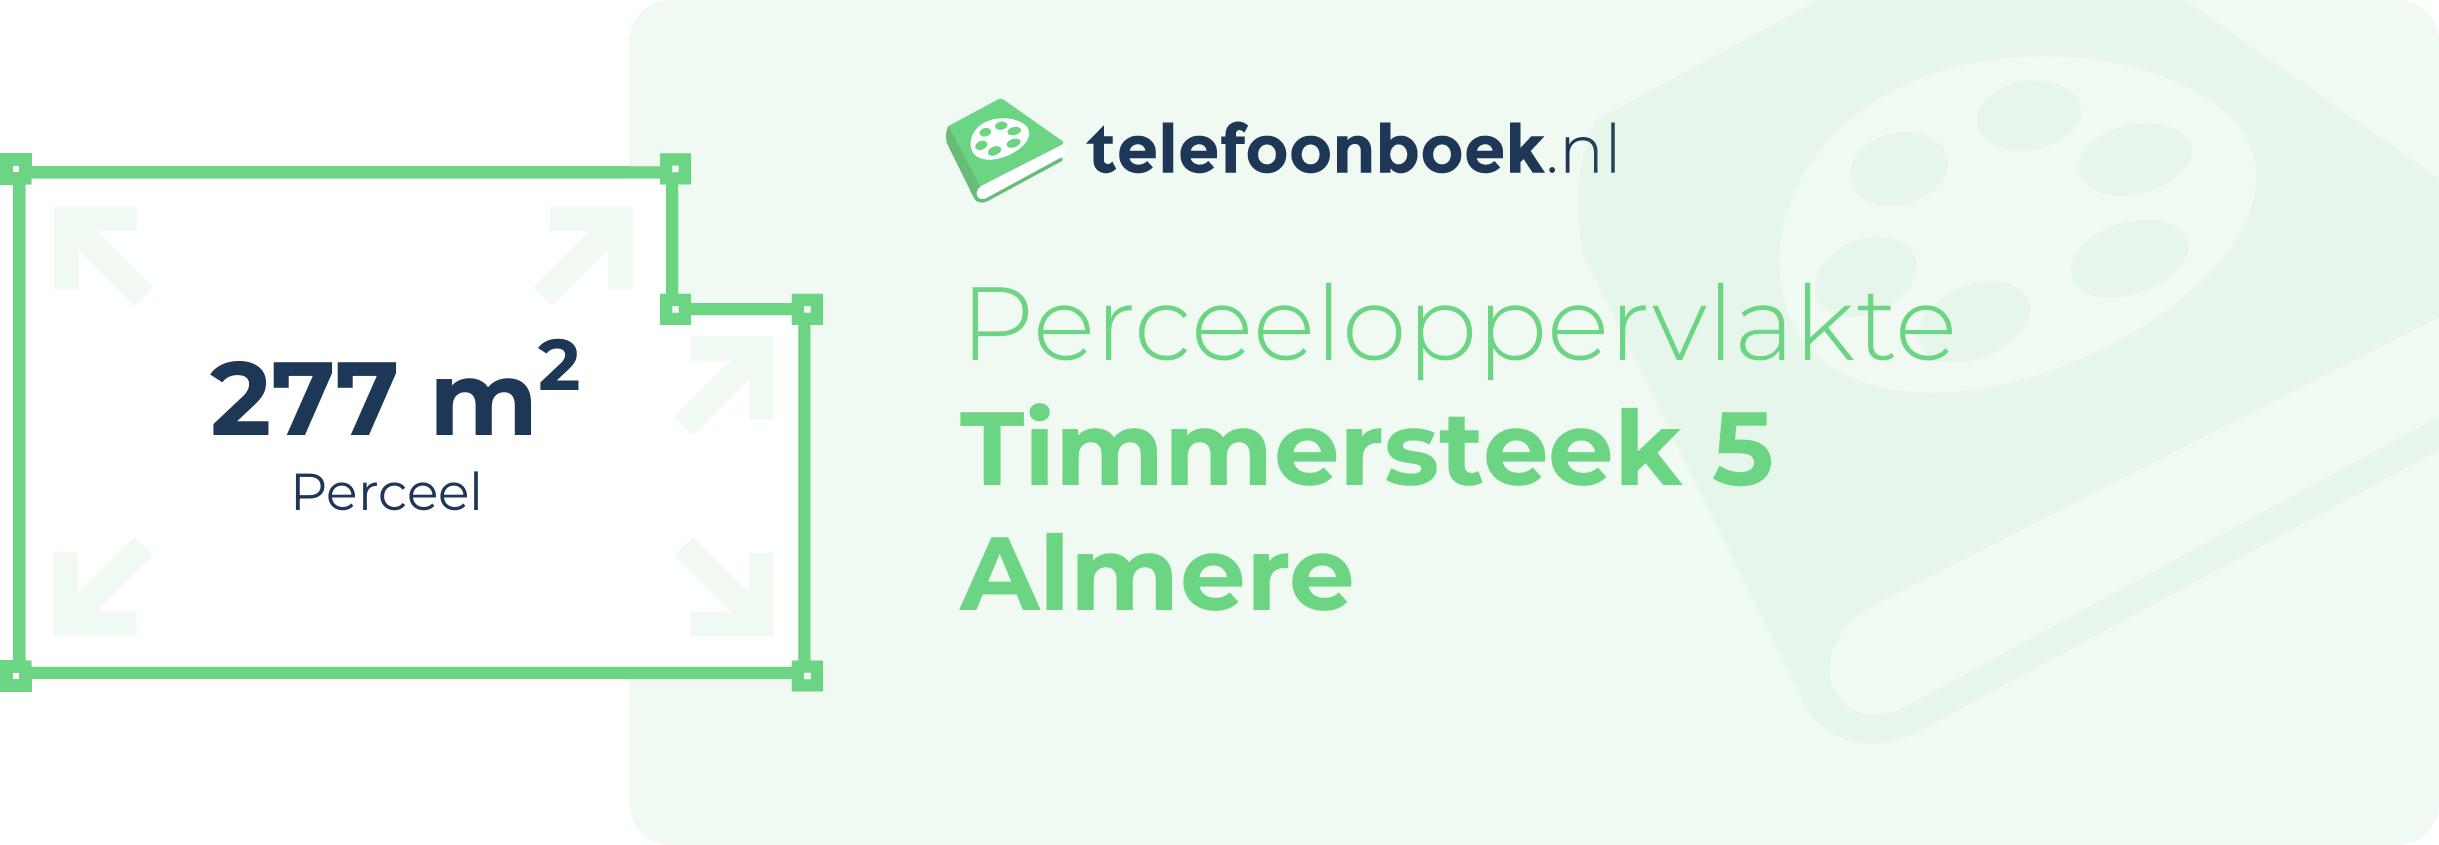 Perceeloppervlakte Timmersteek 5 Almere